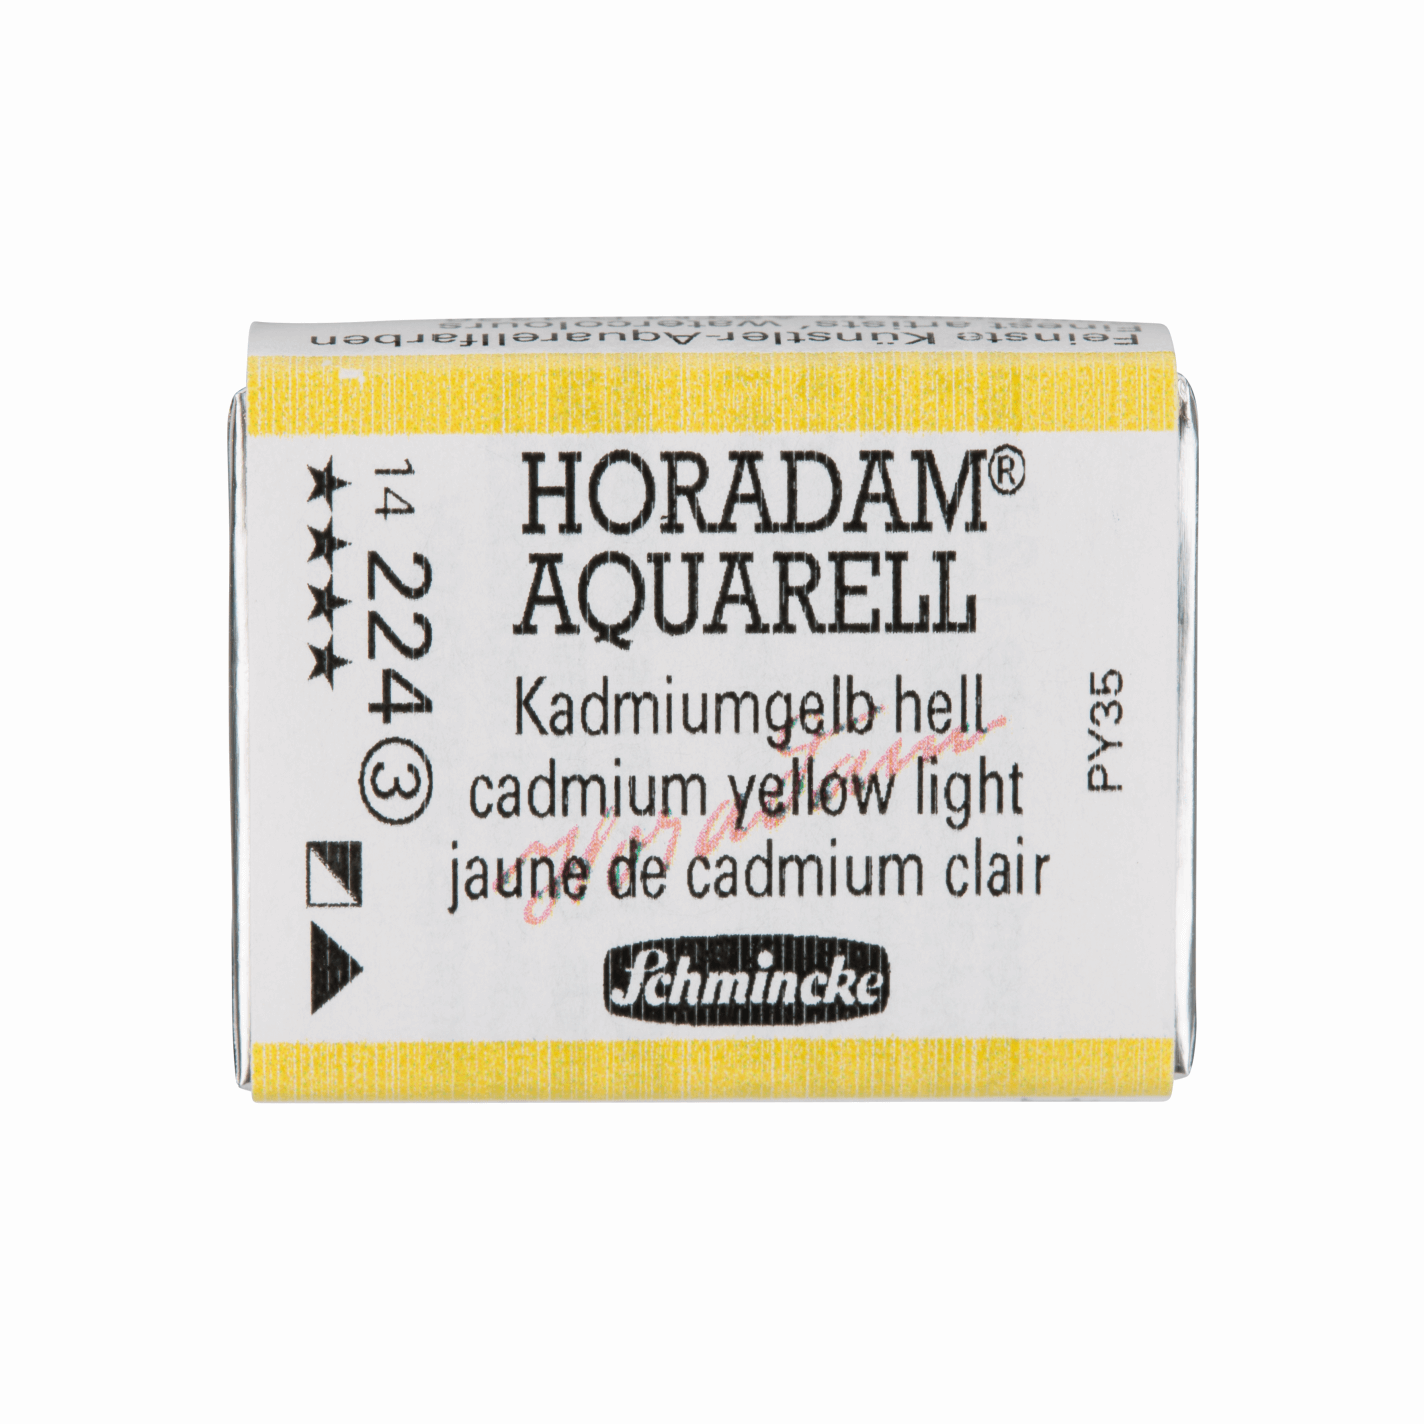 Schmincke Horadam Aquarell pans 1/1 pan Cadmium Yellow Light